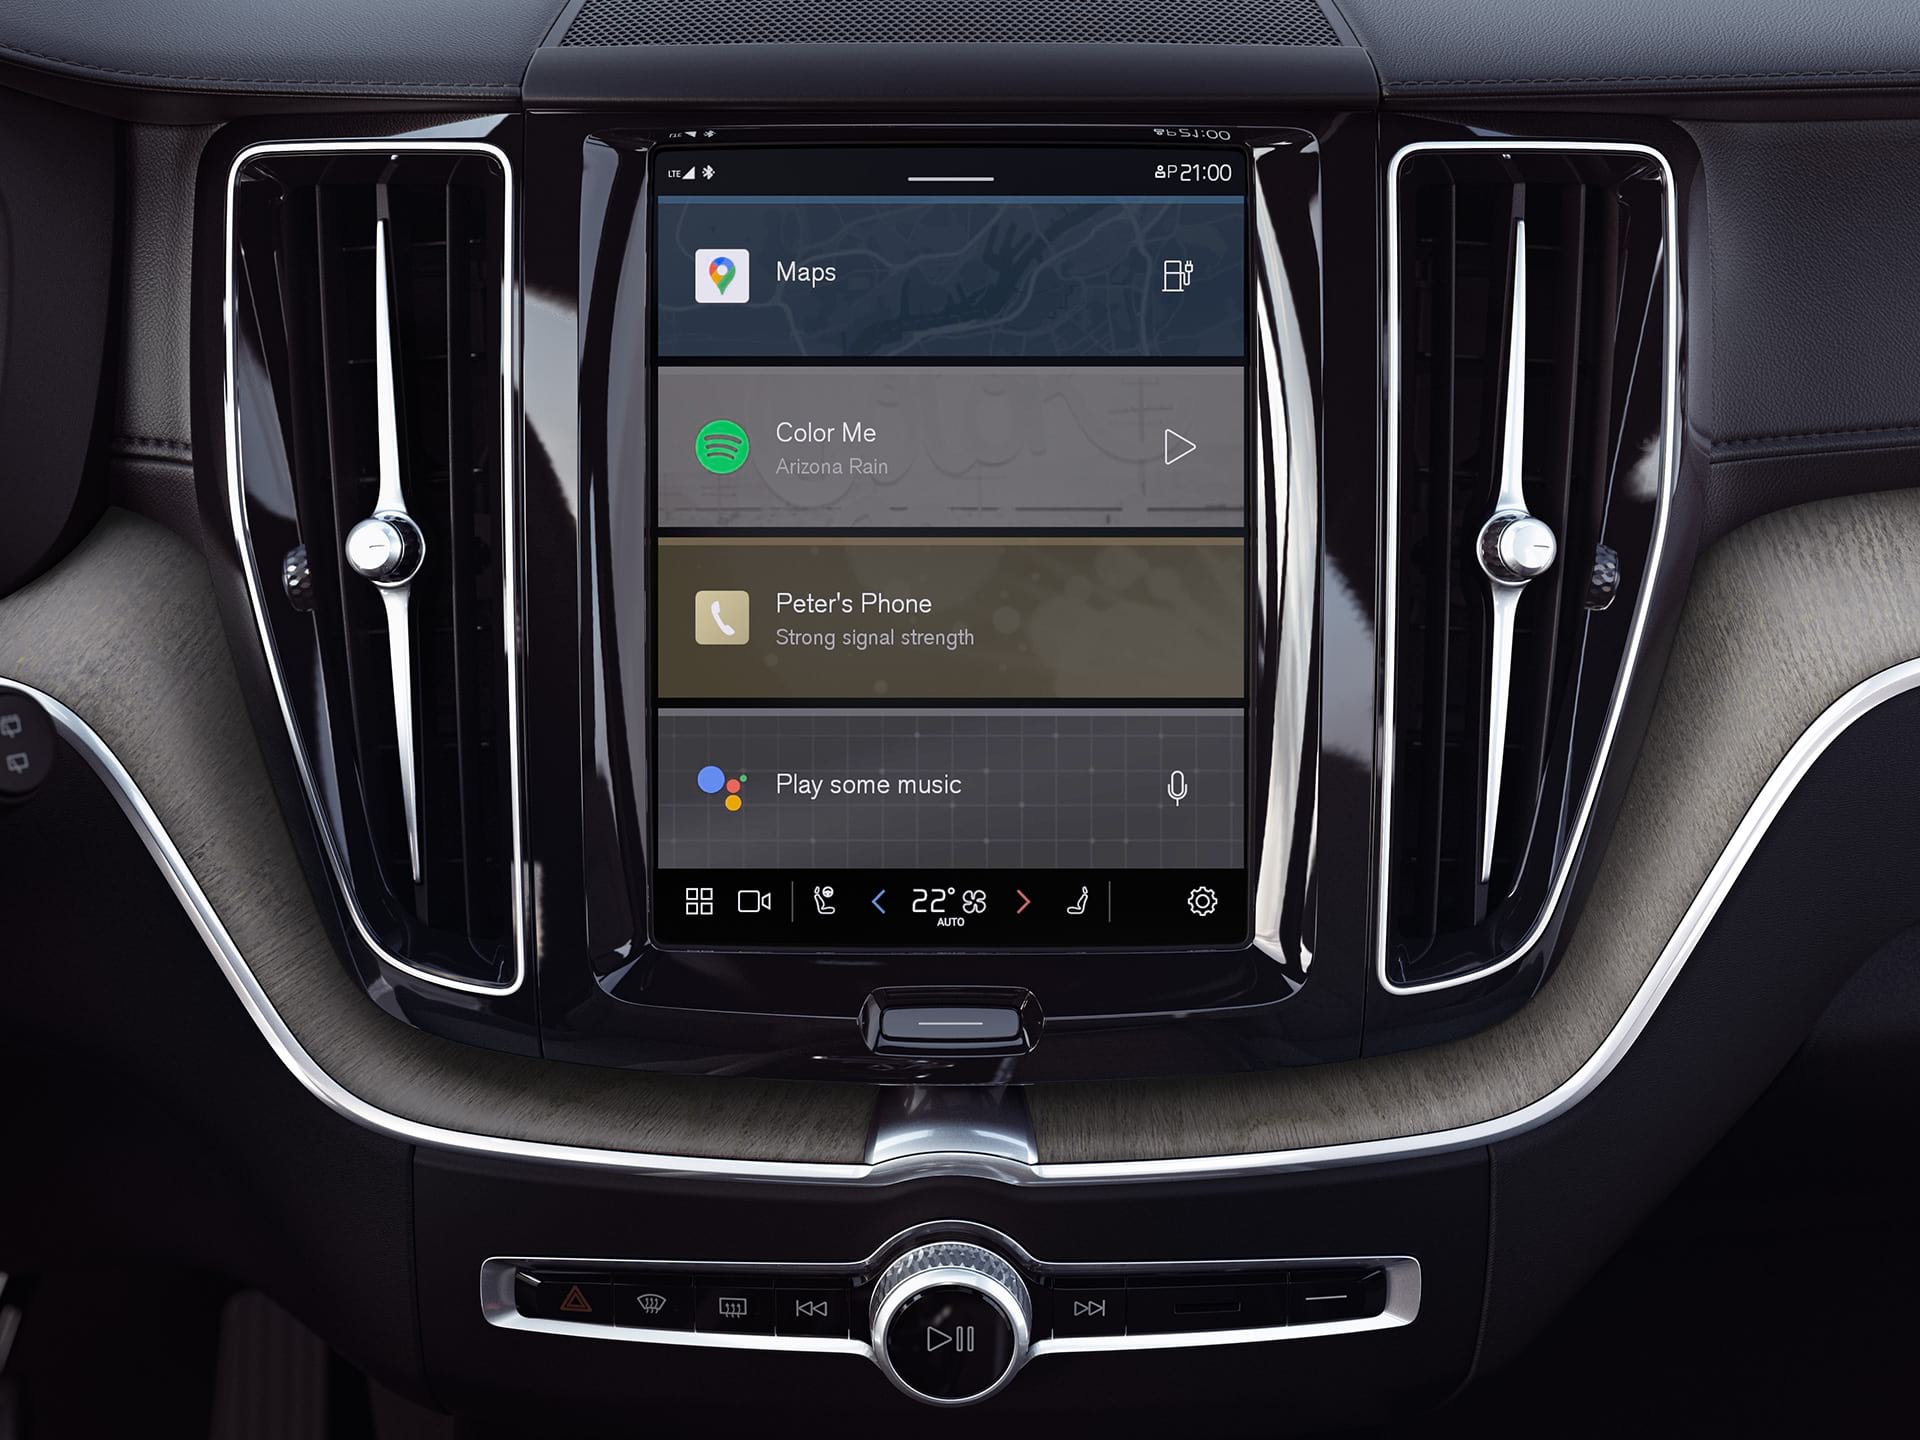 Console centrale d'un SUV Volvo montrant le système d'information et de divertissement avec Google intégré.